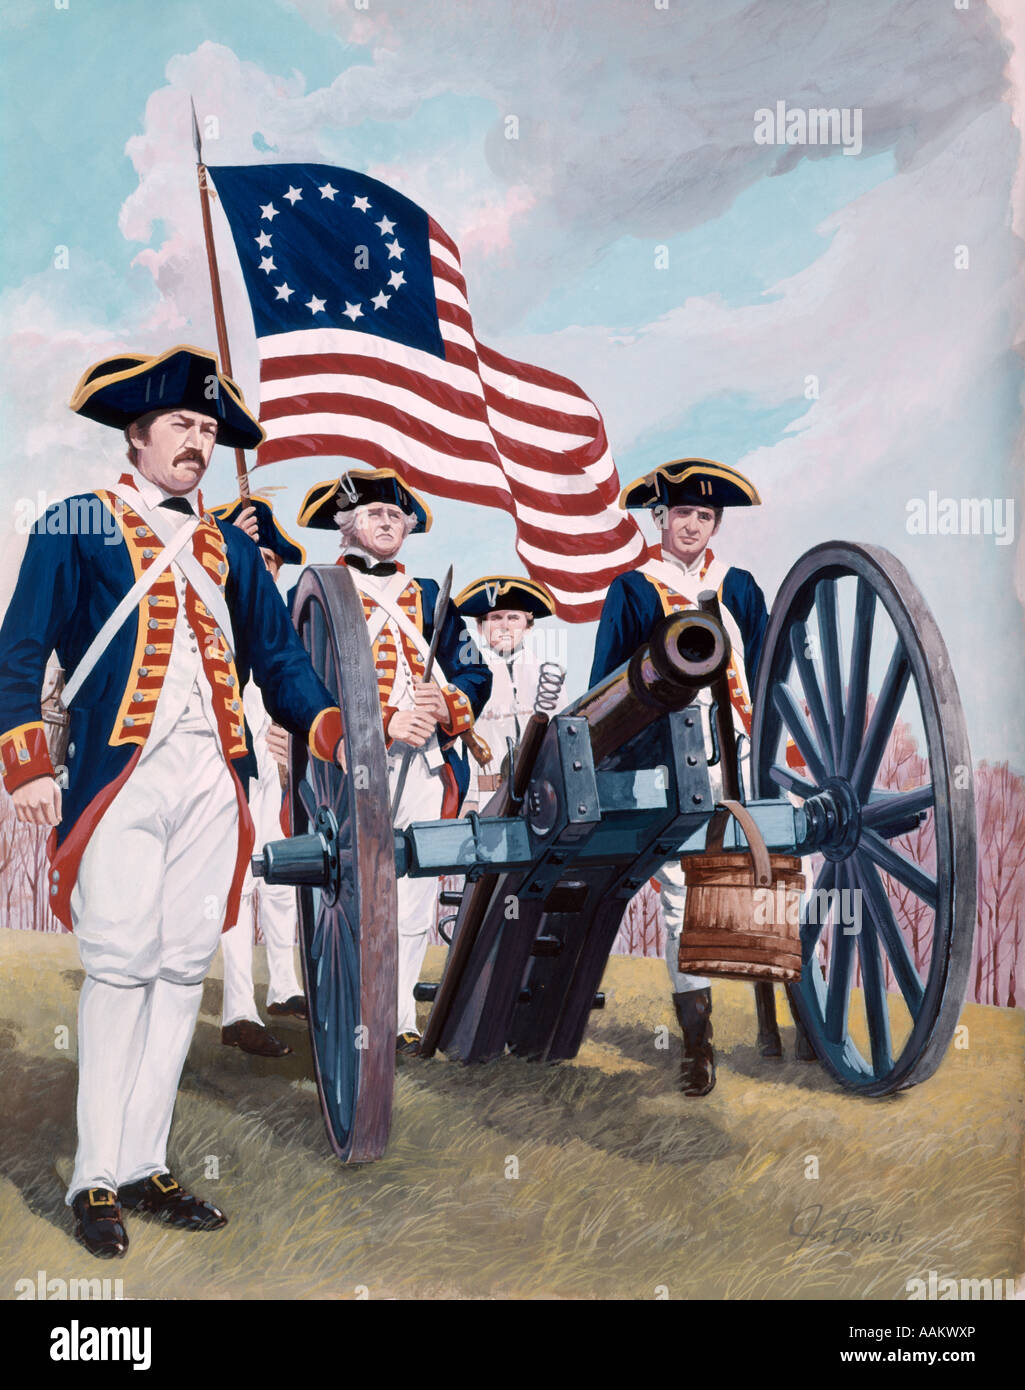 Pittura illustrazione del cannone di artiglieria equipaggio di soldati uomini rivoluzione americana 1776 cappello tricorno bandiera uniforme Foto Stock